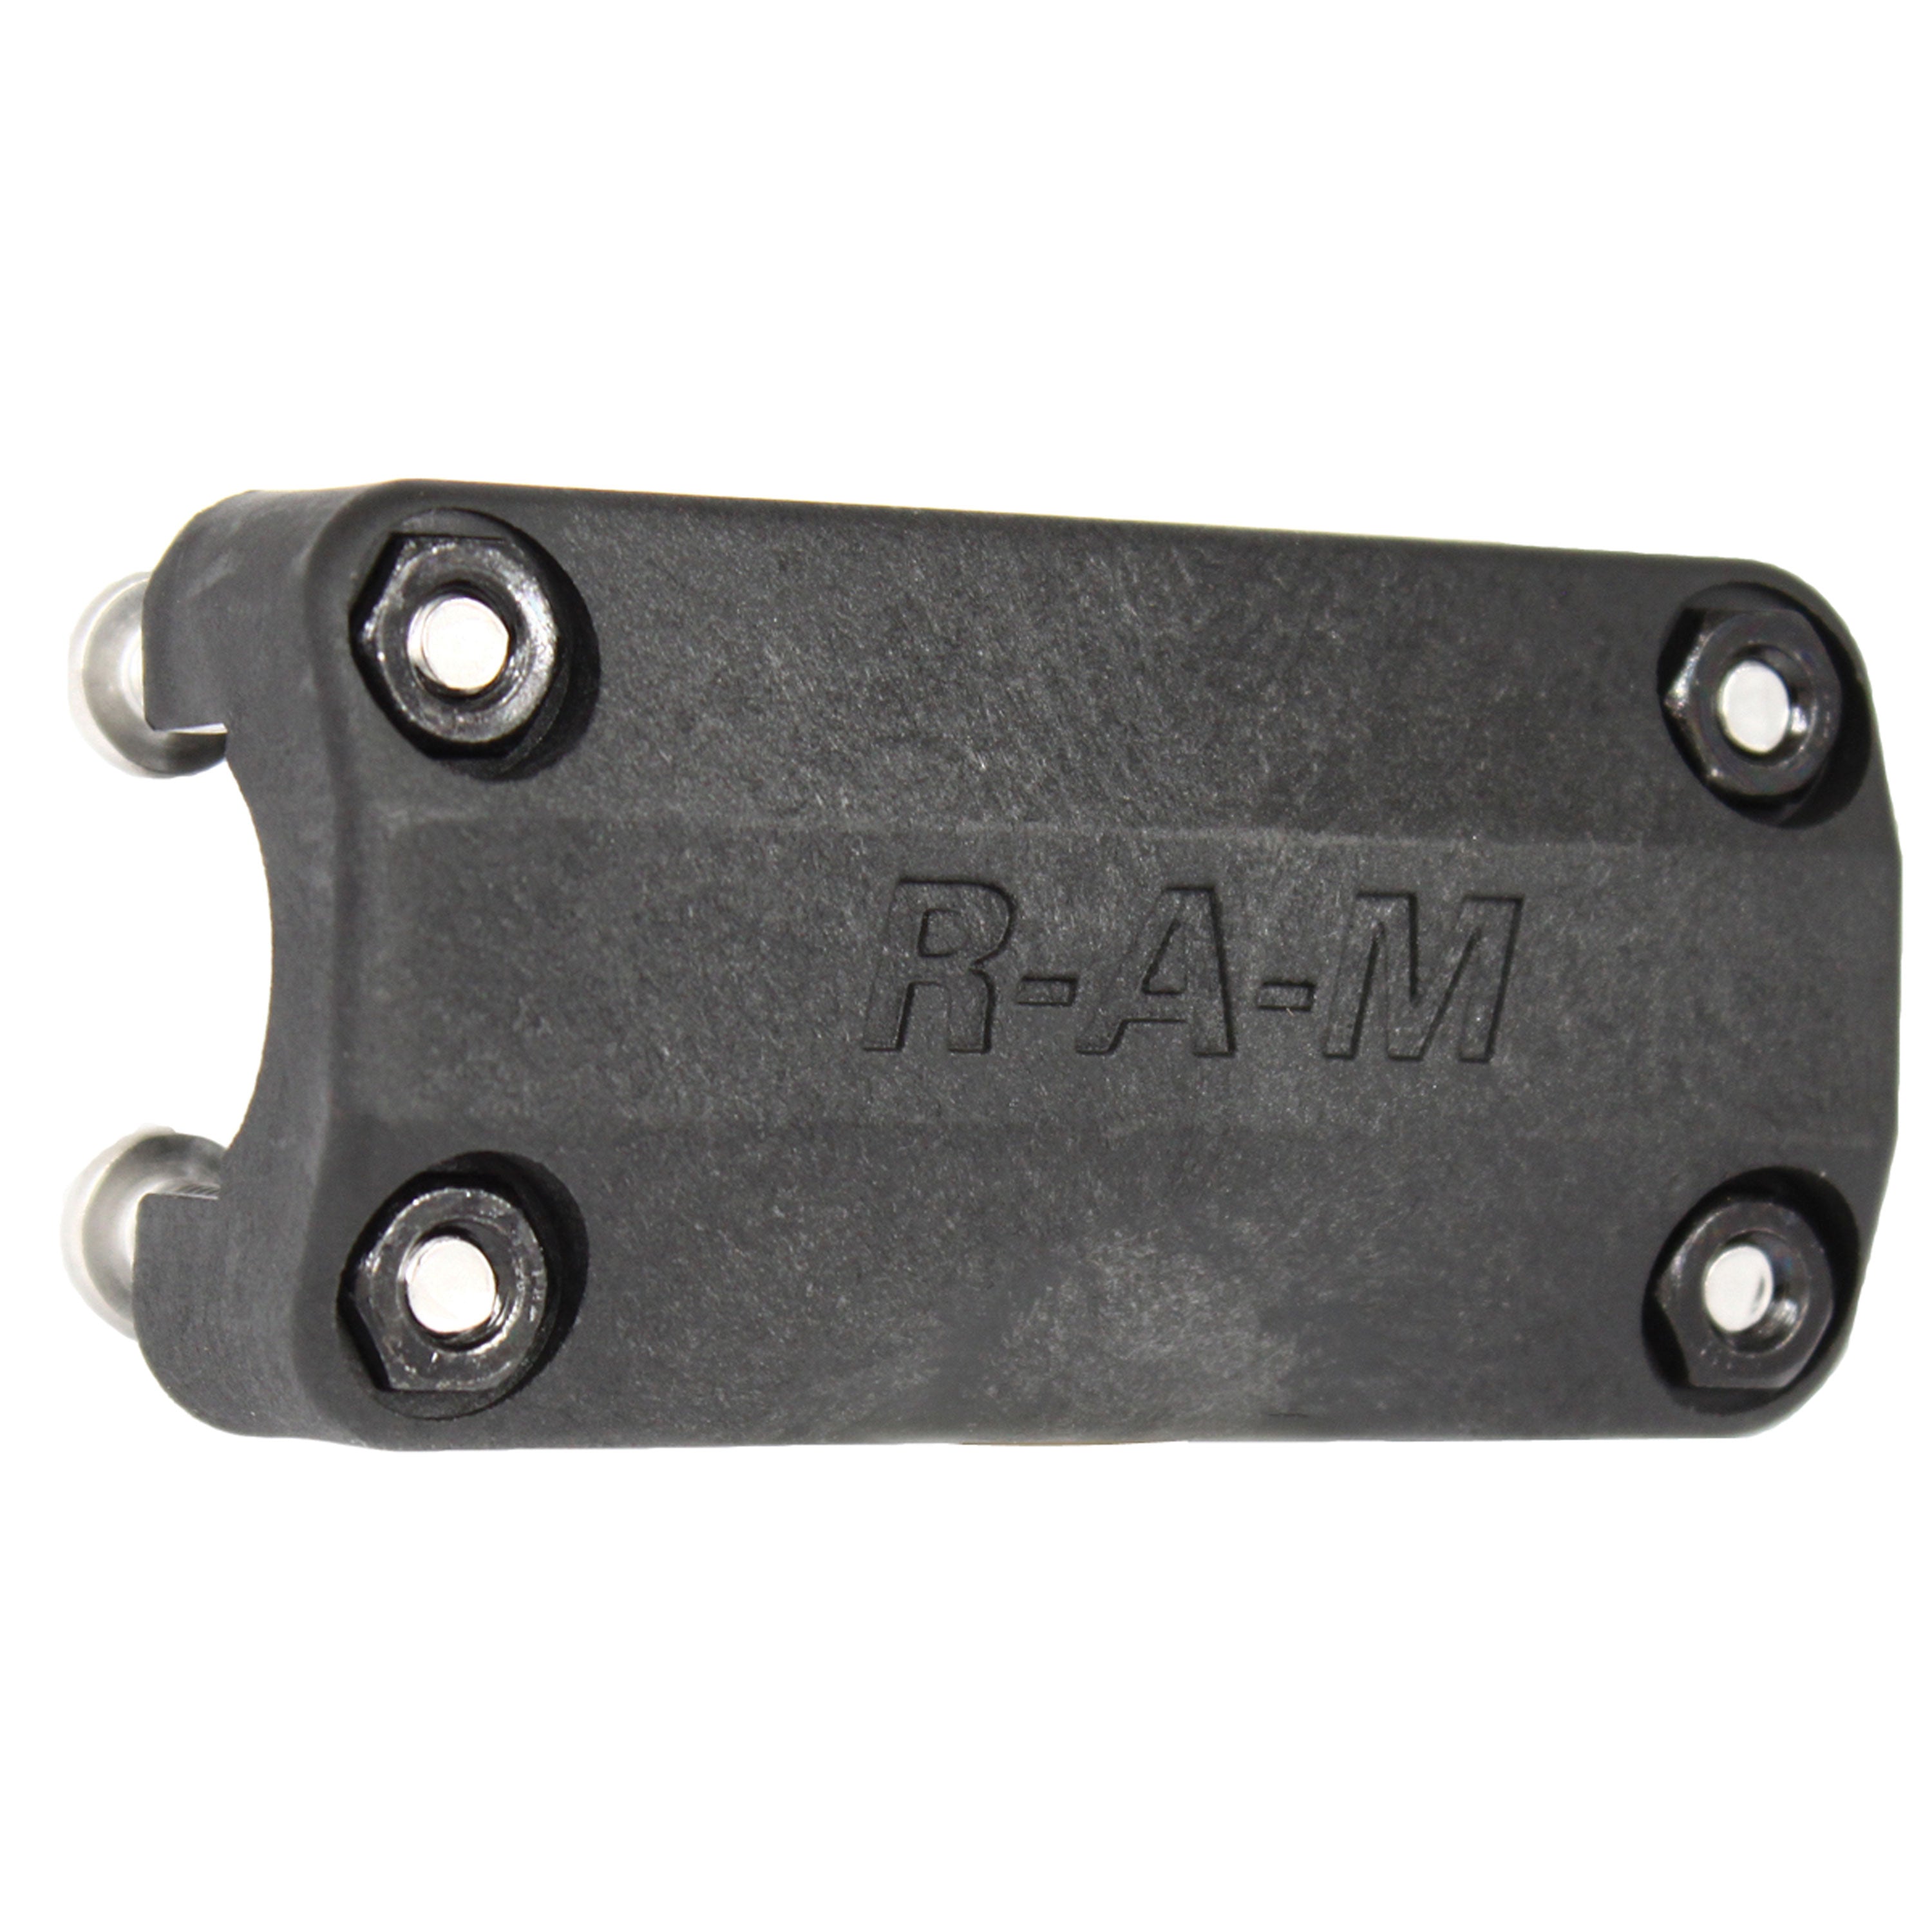 RAM RAM-114RM Rail Mount Bracket for Rod Holder